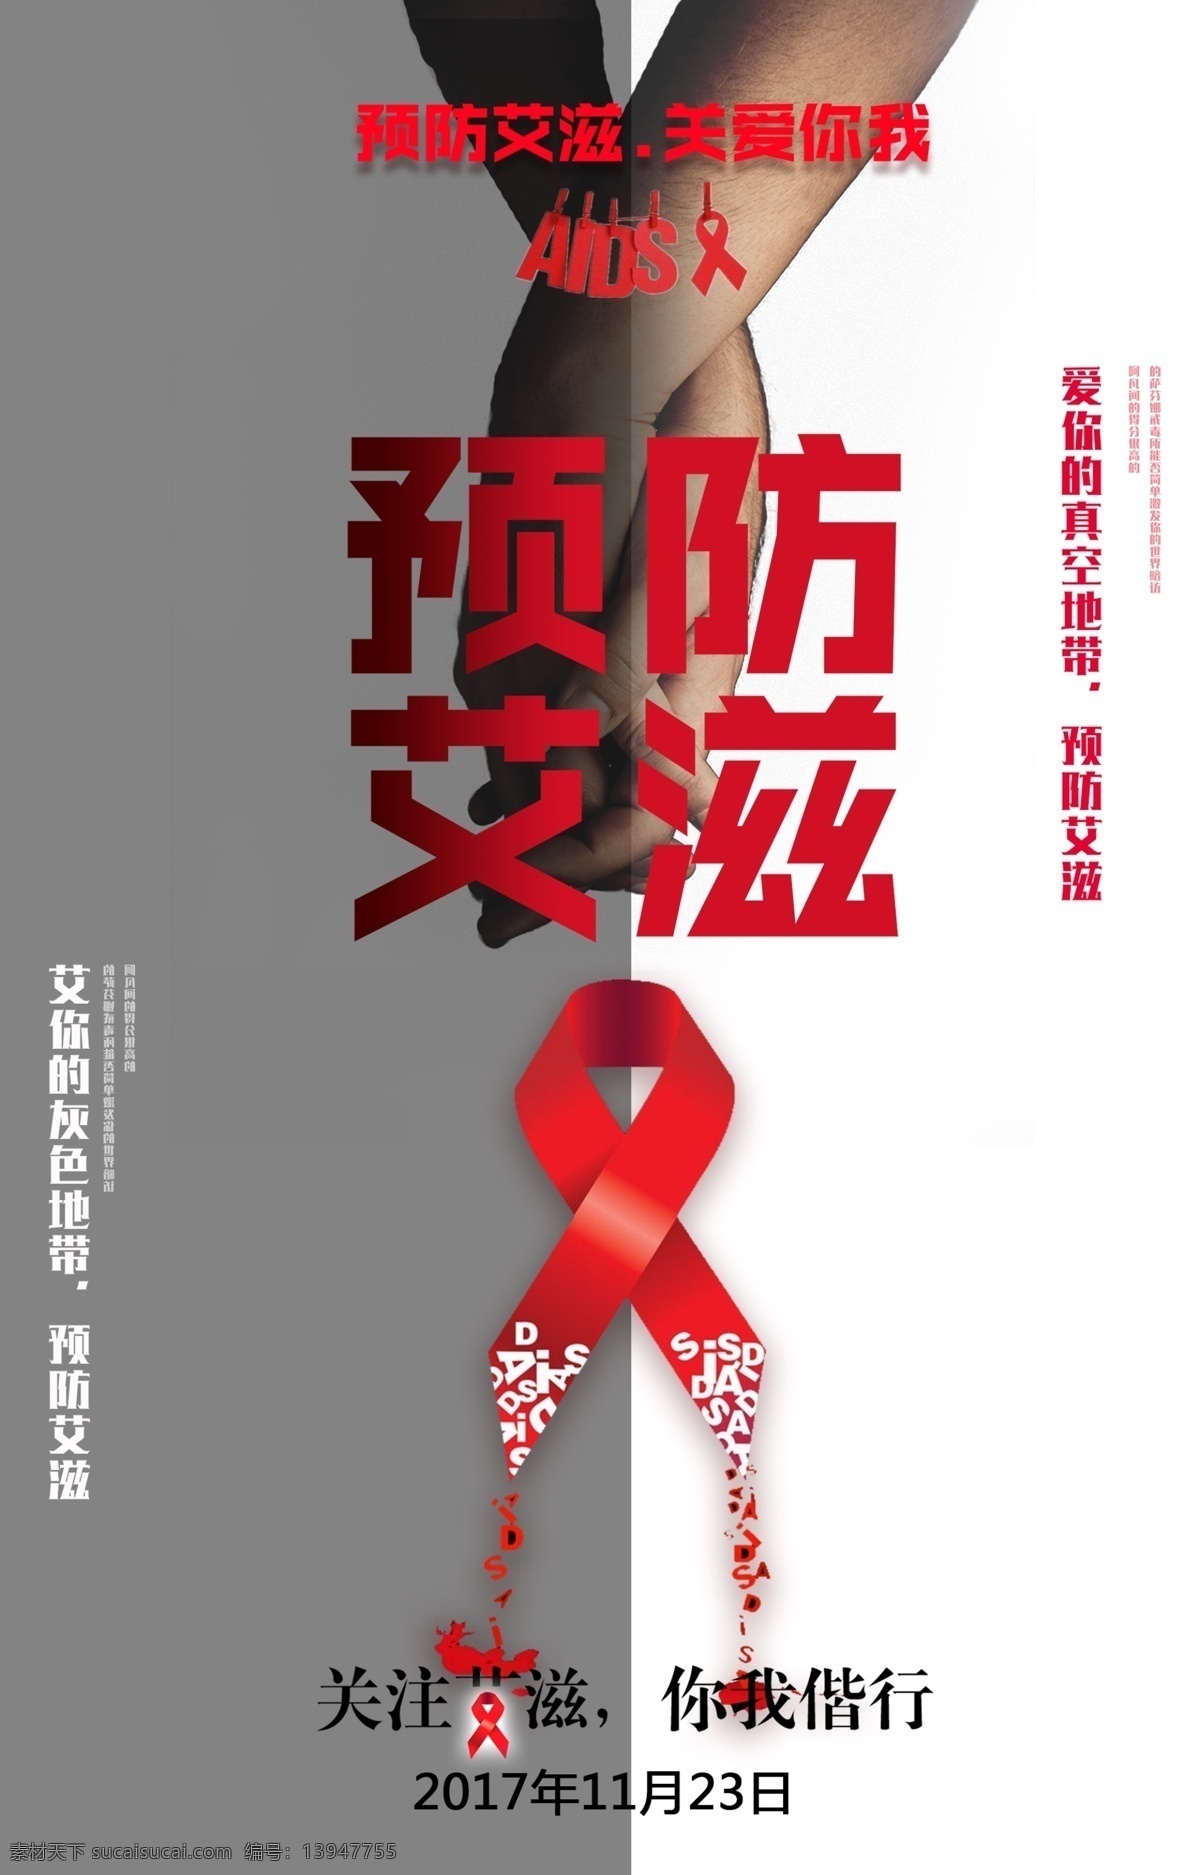 艾滋病 公益 广告 公益广告 红丝带 海报 招贴设计 白色感兴趣 关注艾滋 预防艾滋